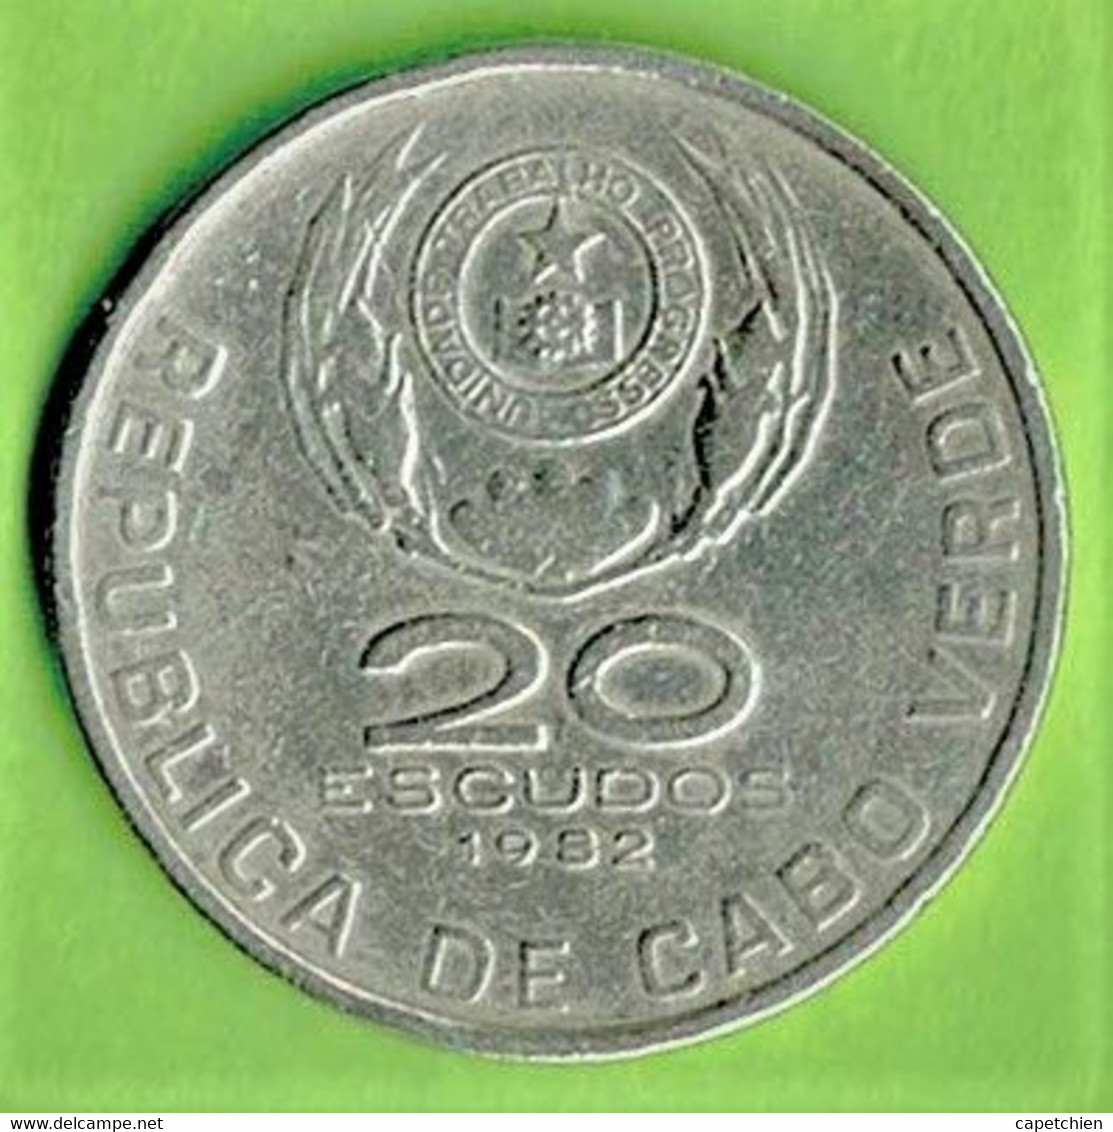 CAP VERT / CABO VERDE / 20 ESCUDOS / 1982 / DOMINGOS RAMOS / 1935 - 1966 - Cap Verde